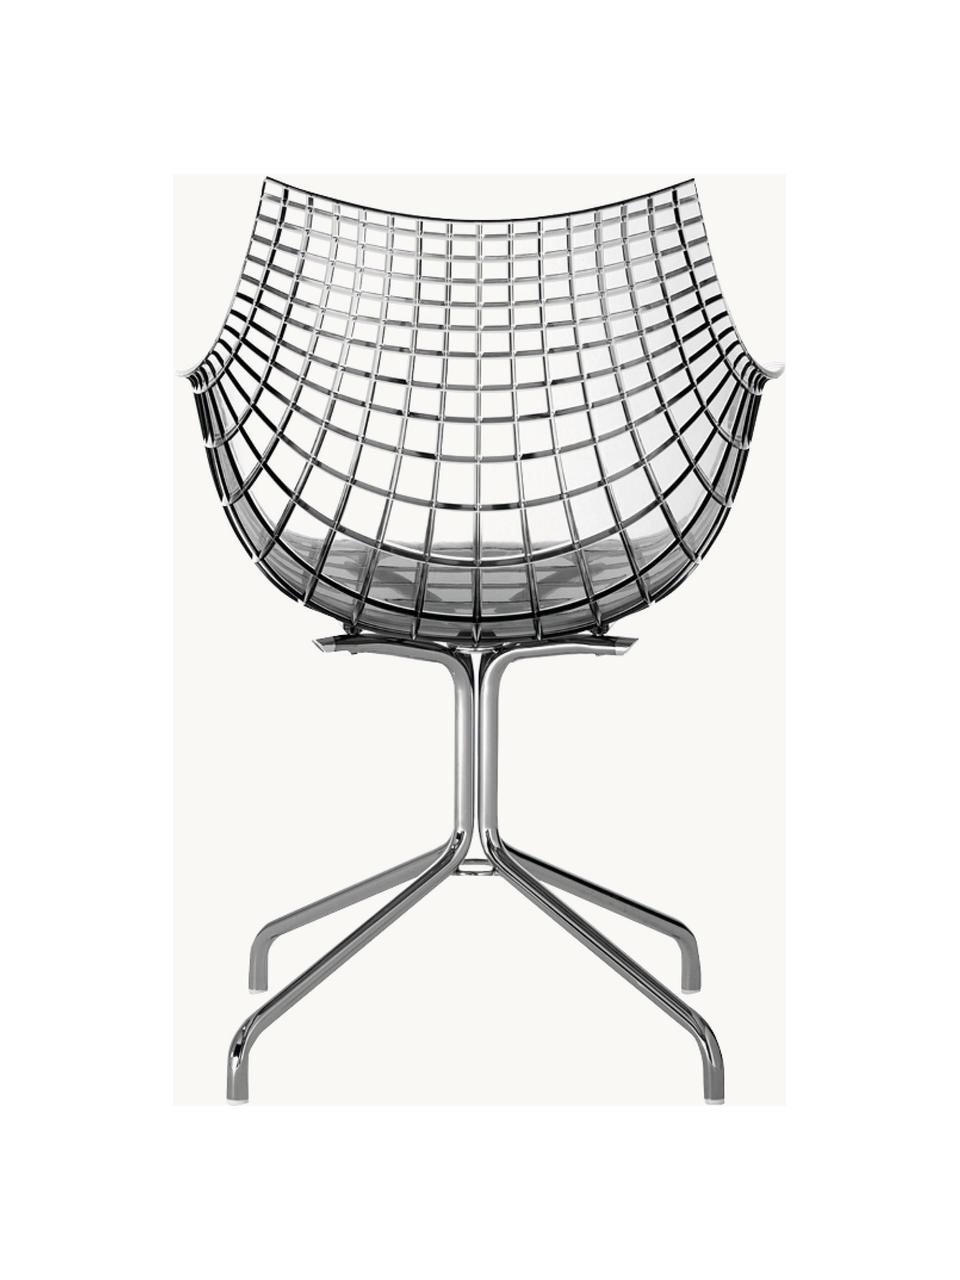 Drehbarer Kunststoffstuhl Meridiana, Sitzfläche: Kunststoff, Beine: Stahl, verchromt, Transparent, Silberfarben, B 58 x T 55 cm